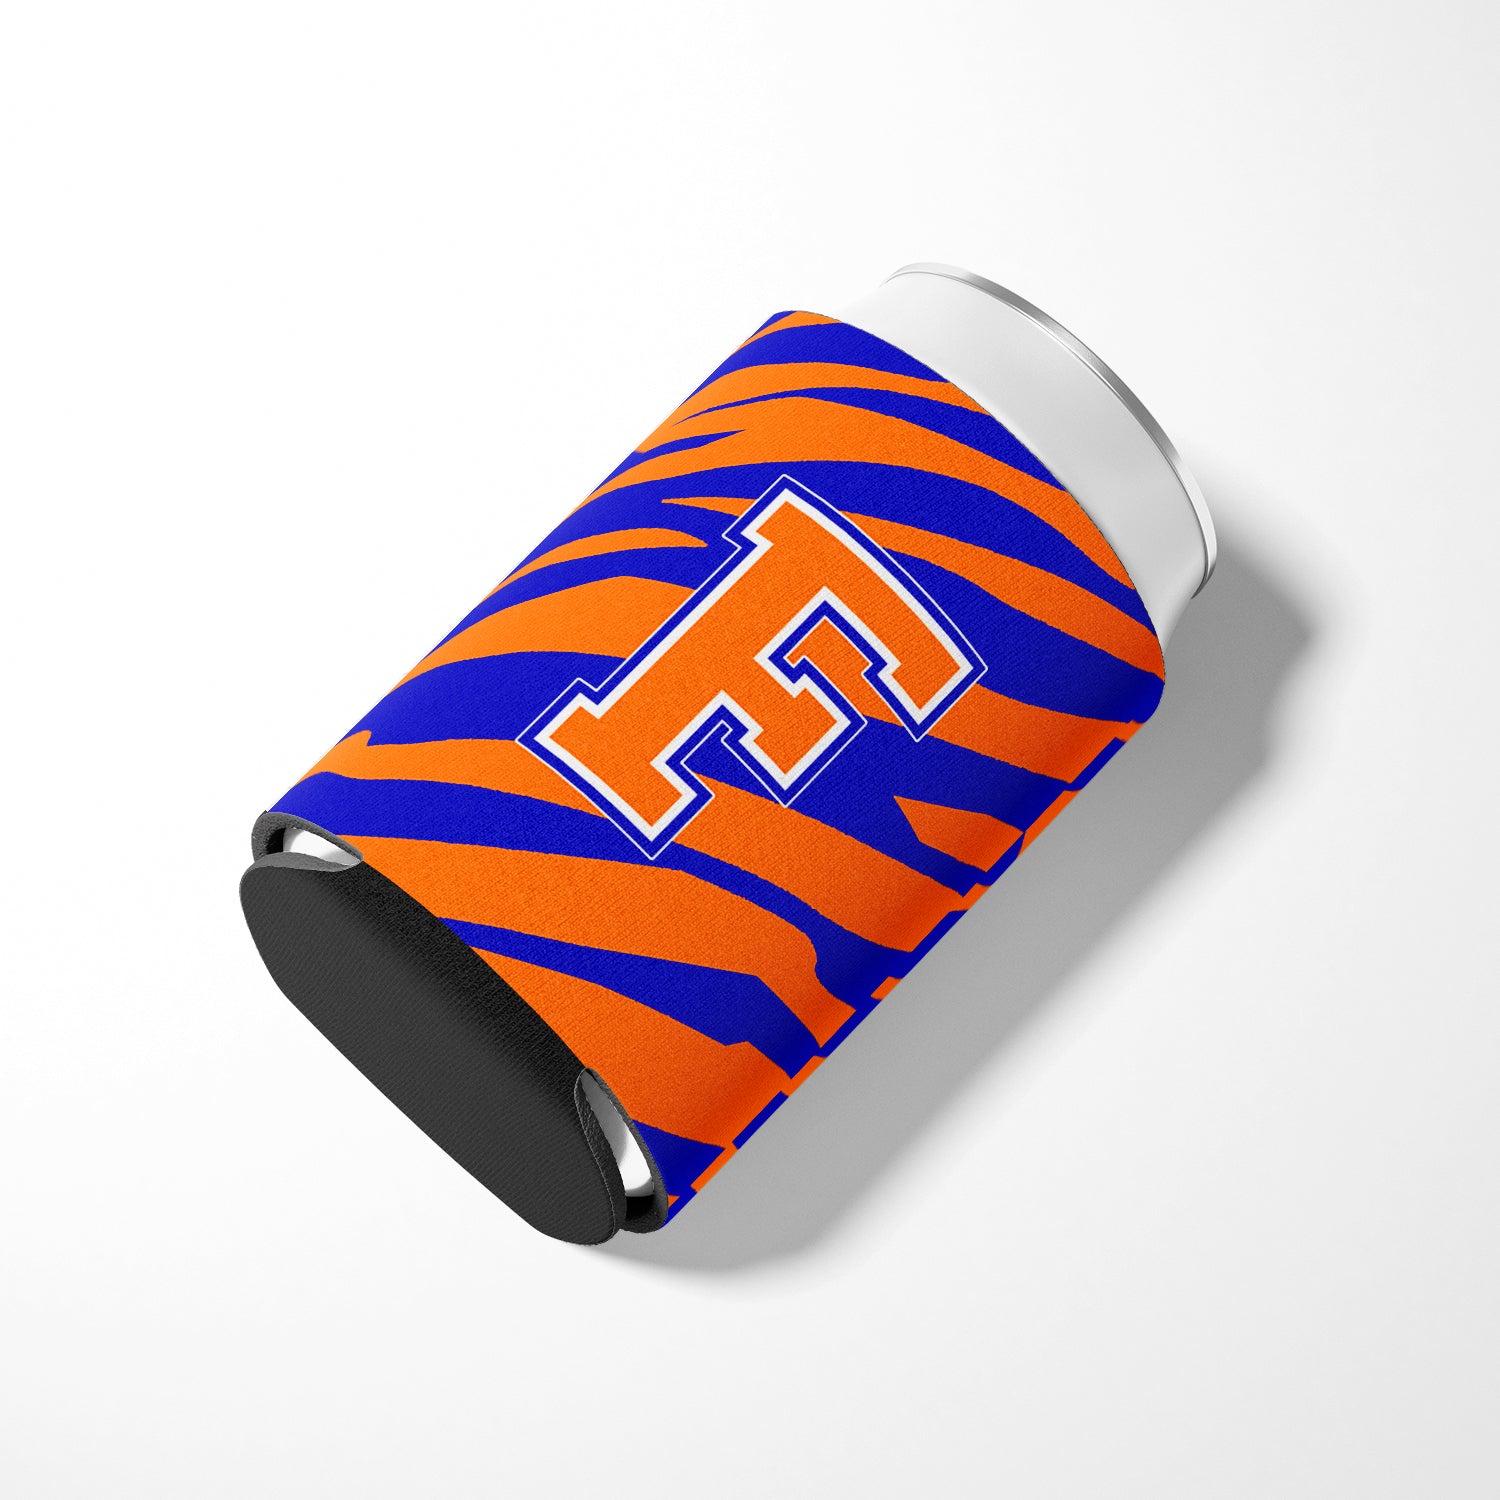 Letter F Initial Monogram Tiger Stripe Blue Orange Can or Bottle Beverage Insulator Hugger.